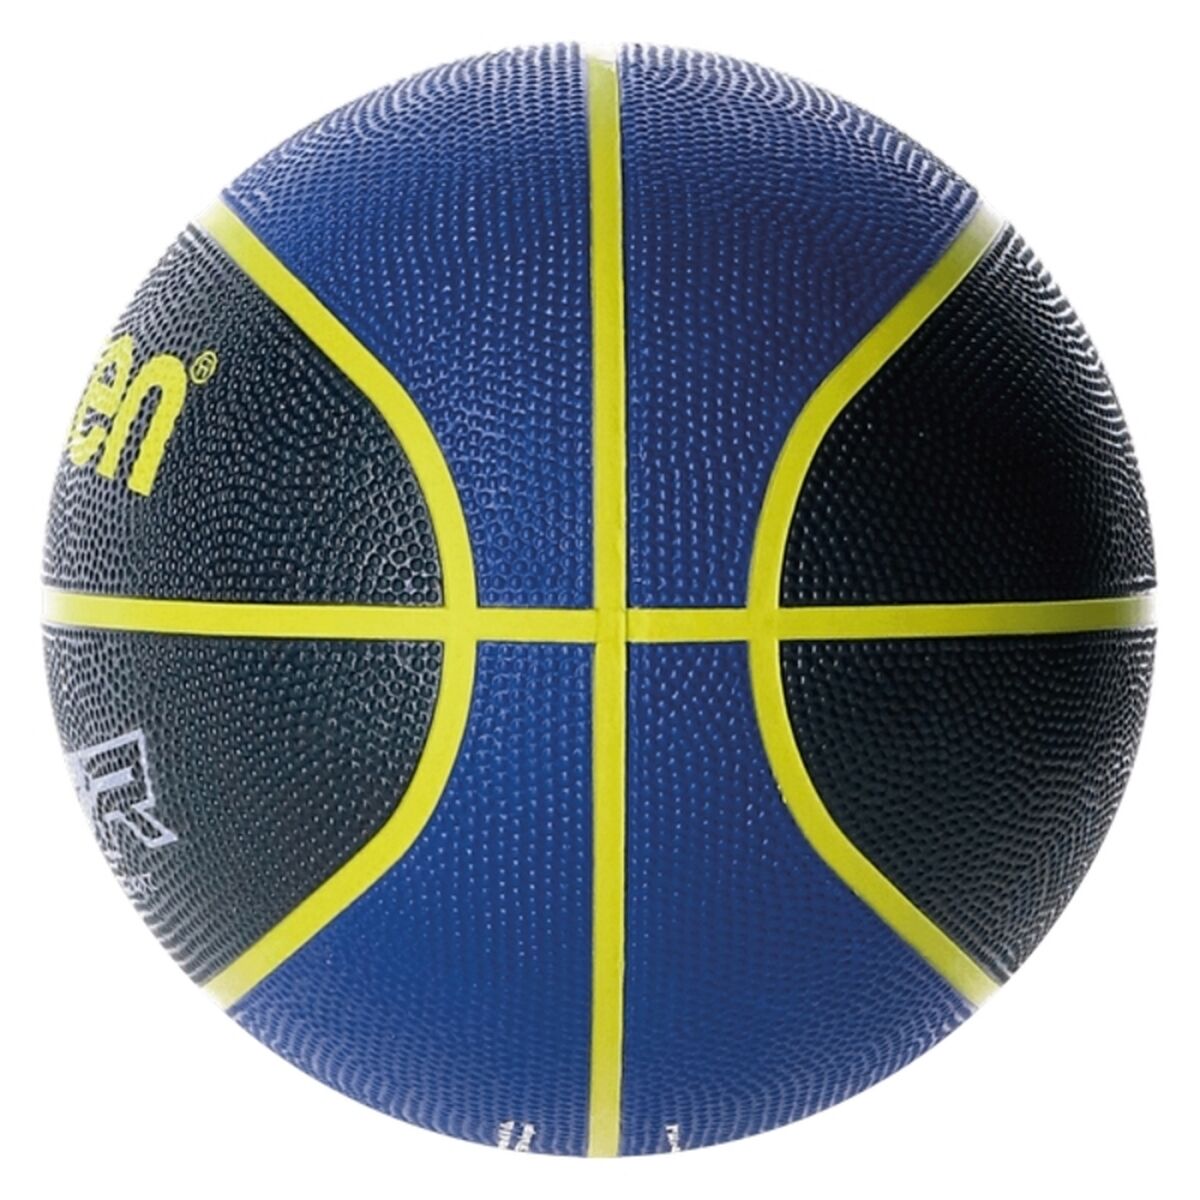 Balón de Baloncesto Enebe BC7R2 Azul Talla única